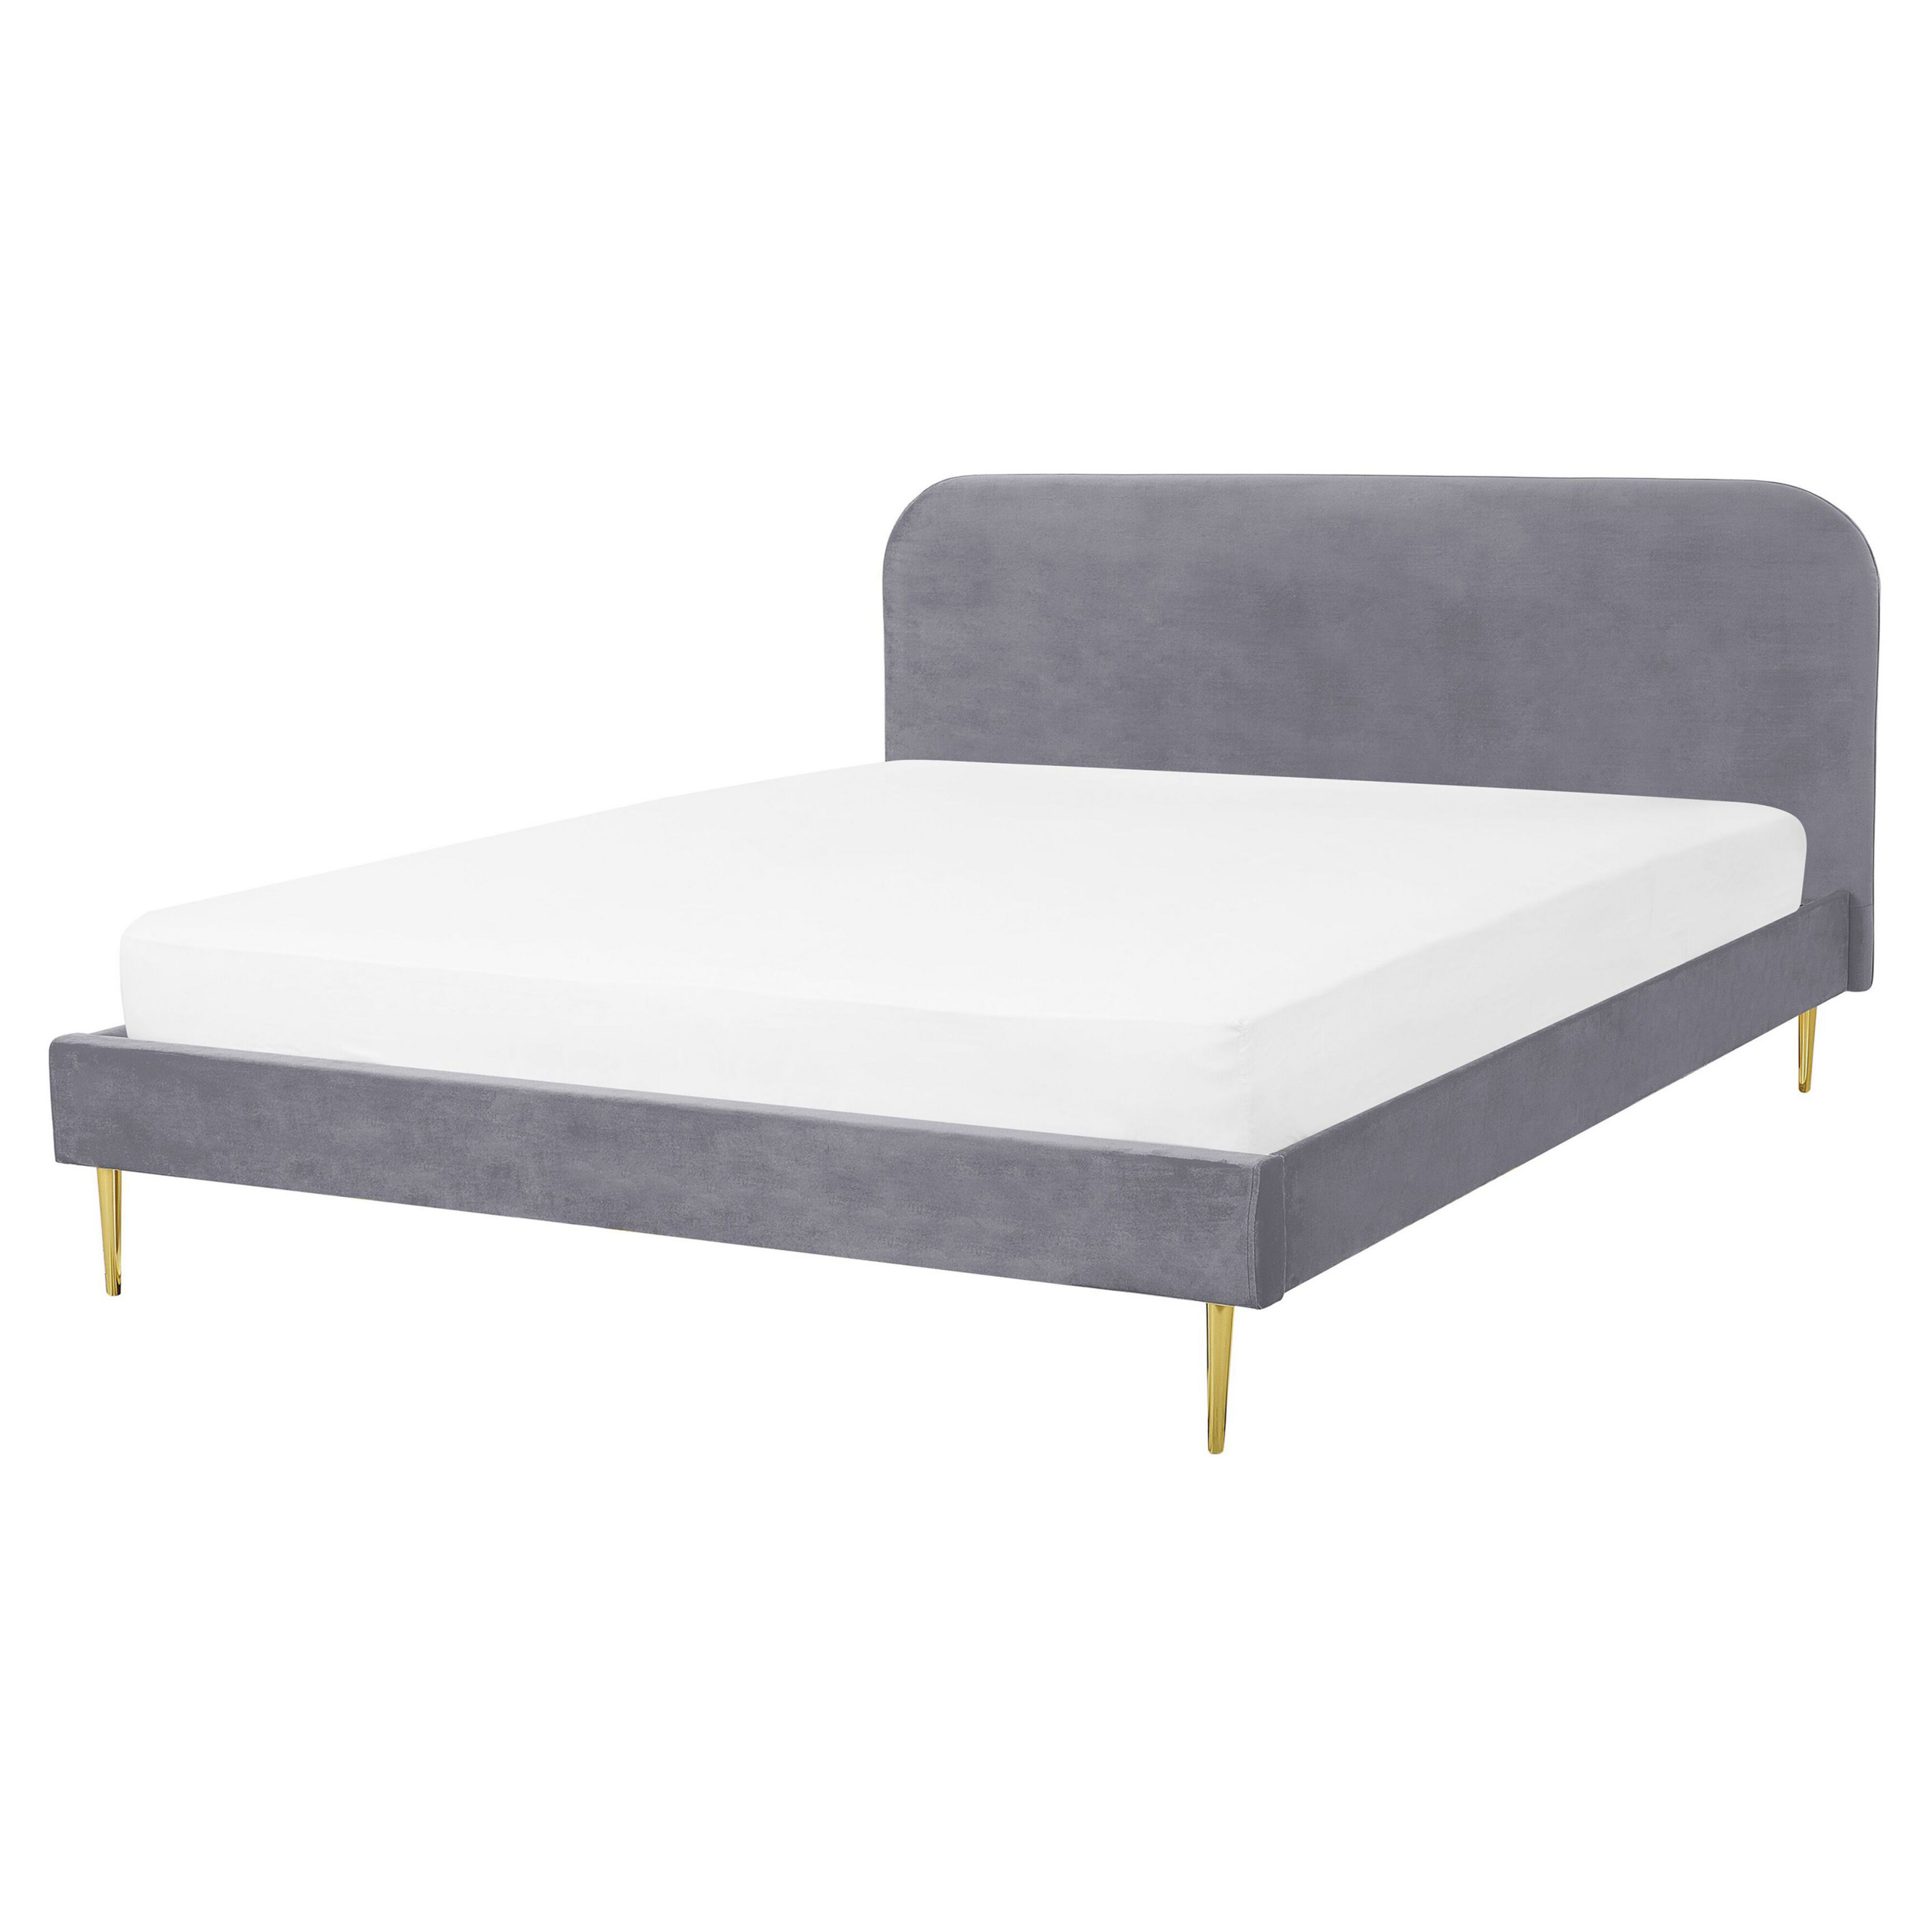 Beliani Bed Grey Velvet Upholstery EU King Size Golden Legs Headboard Slatted Frame 5.3 ft Minimalist Design